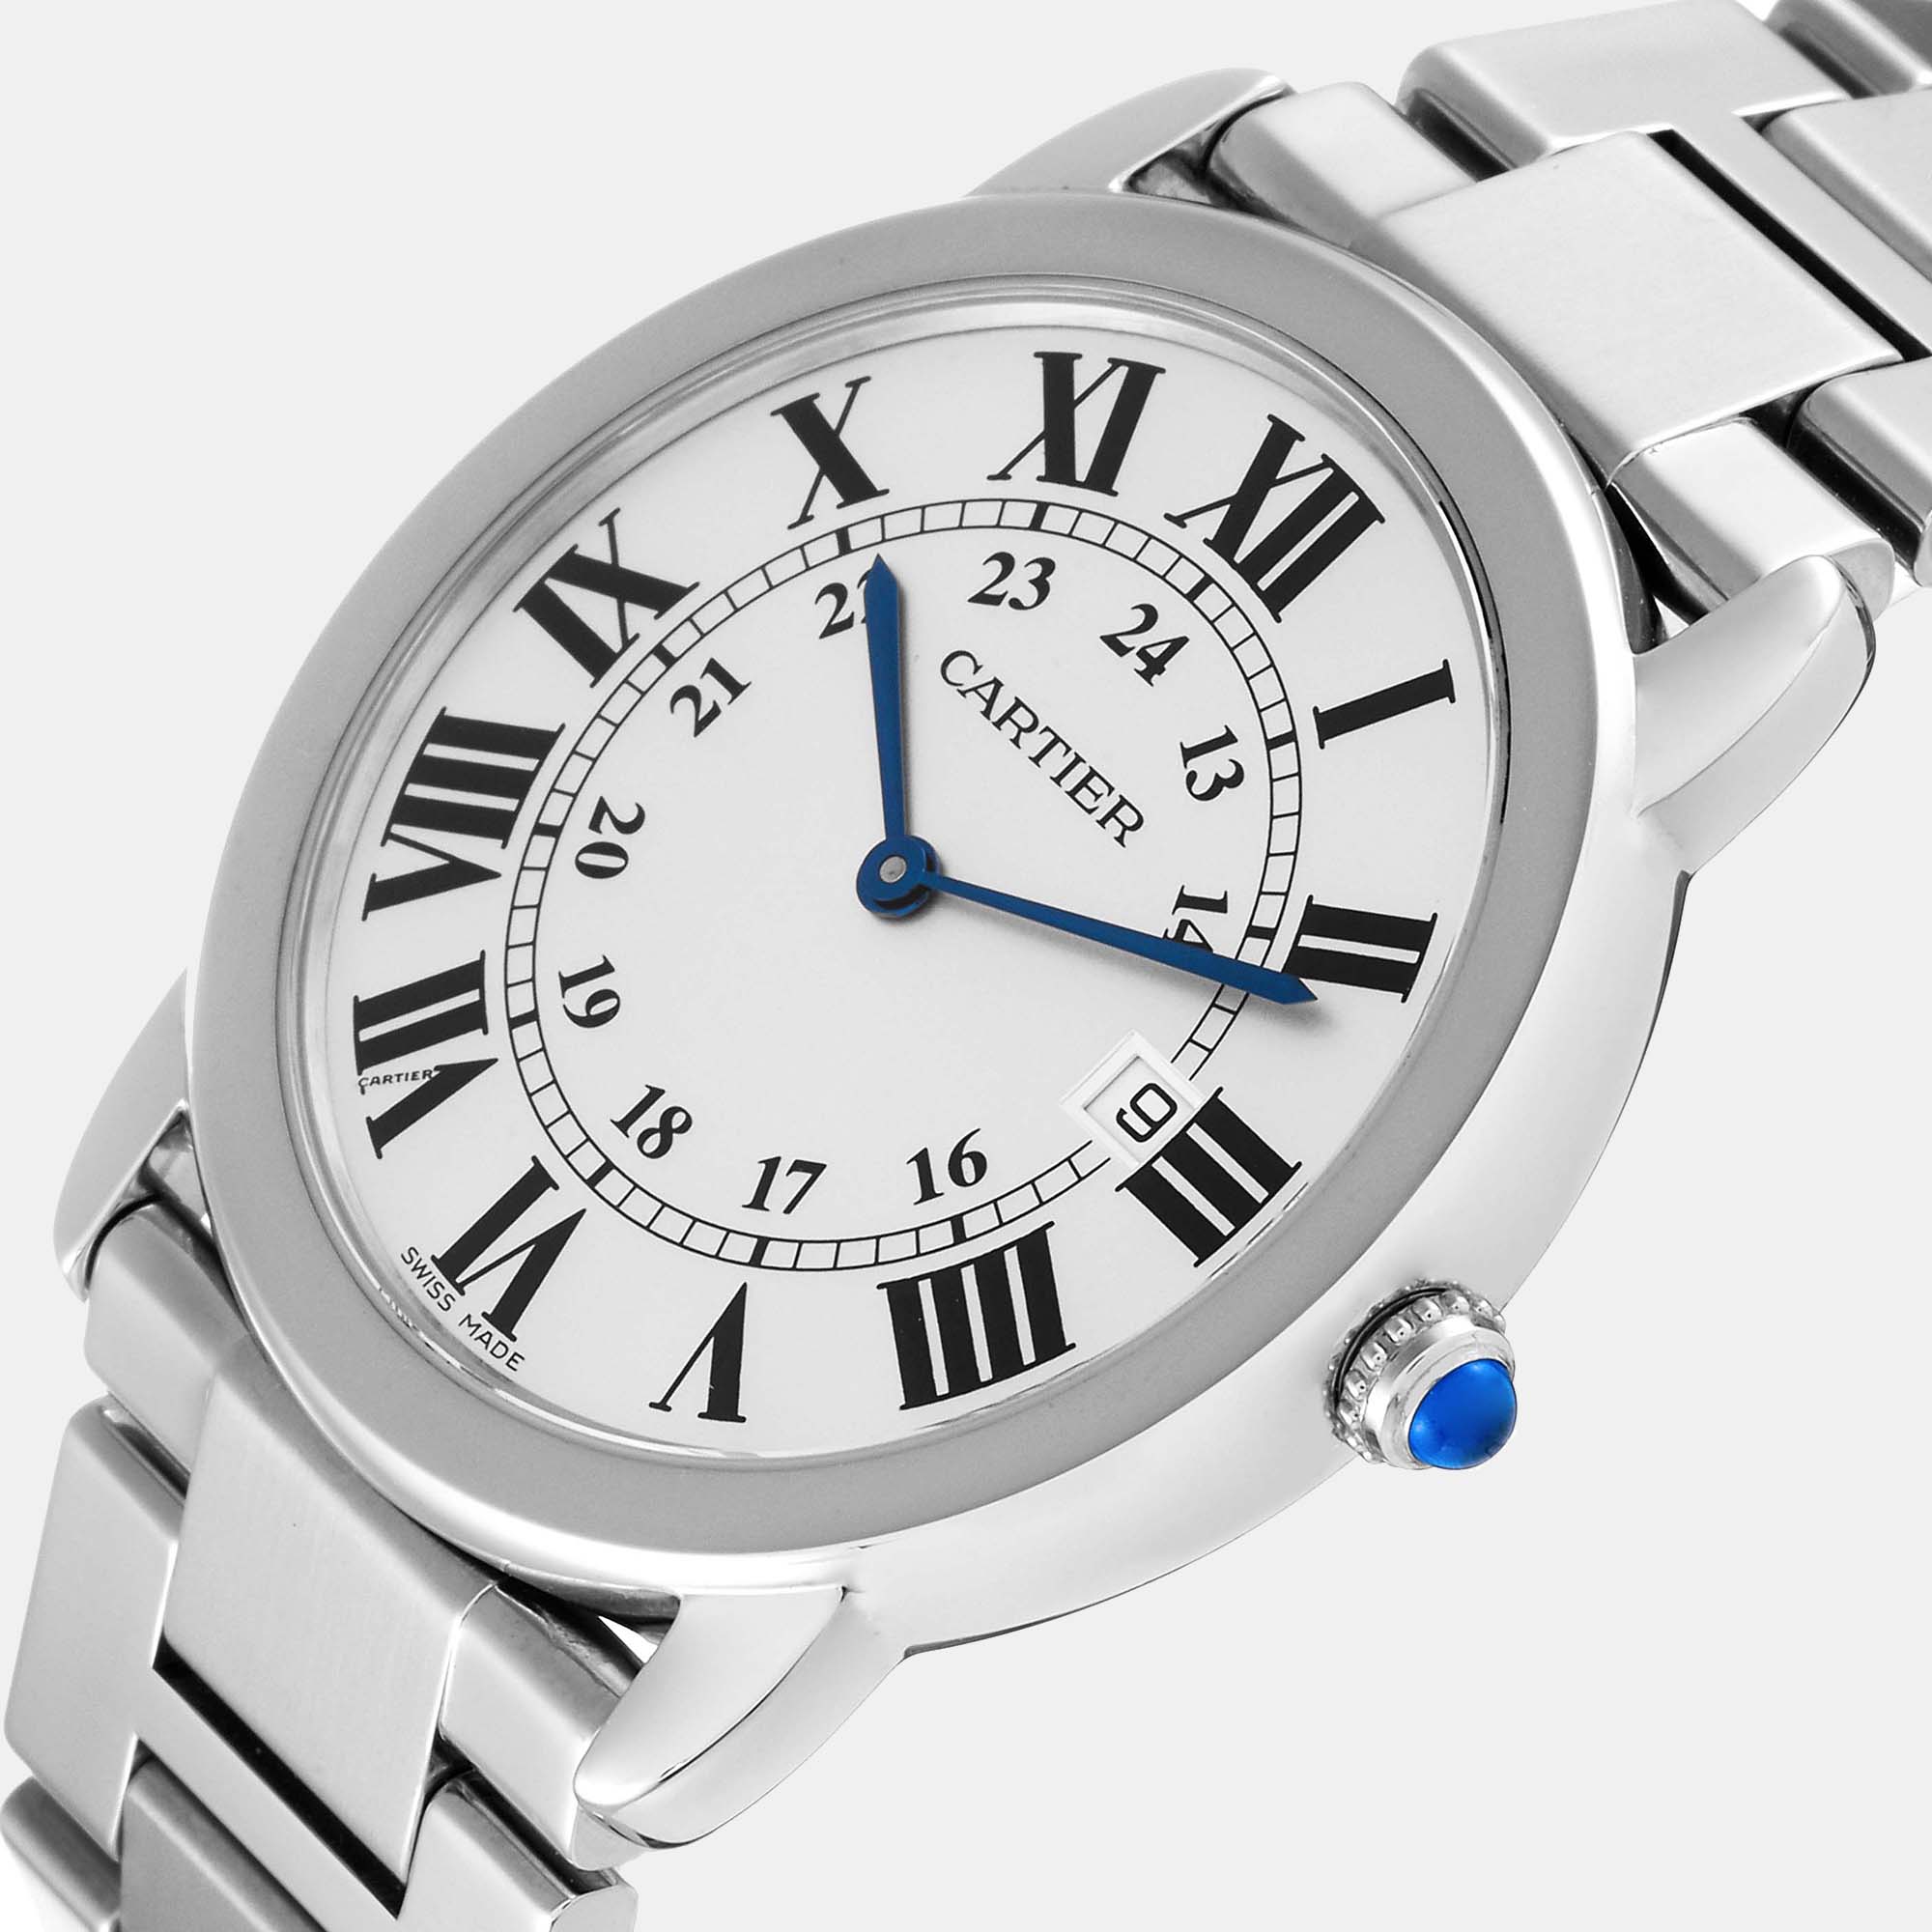 

Cartier Ronde Solo Large Steel Men's Watch W6701005 36 mm, Silver